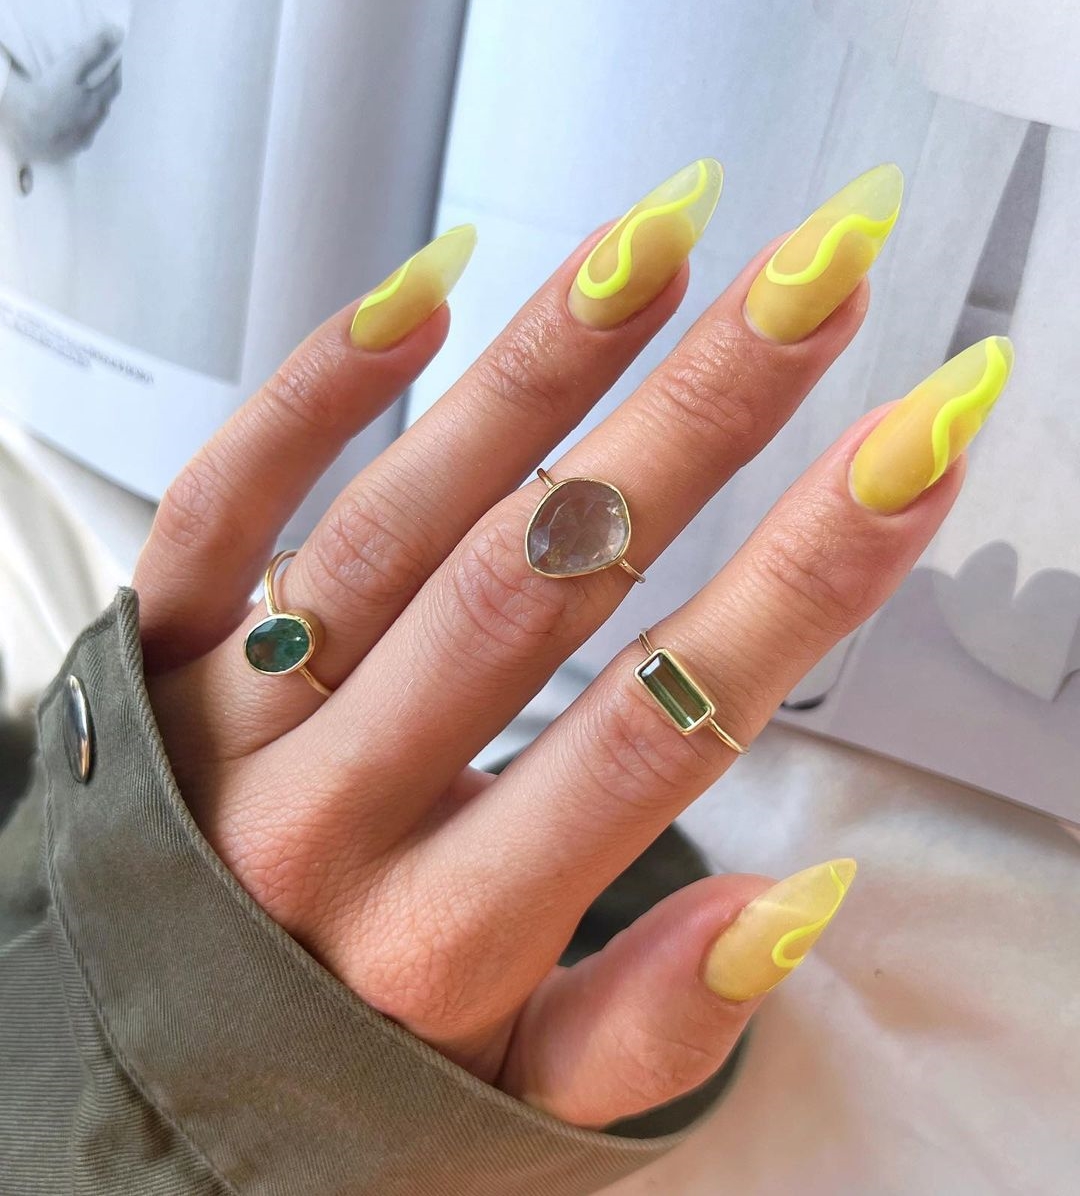 Amandelgele nagels met gele wervelingen